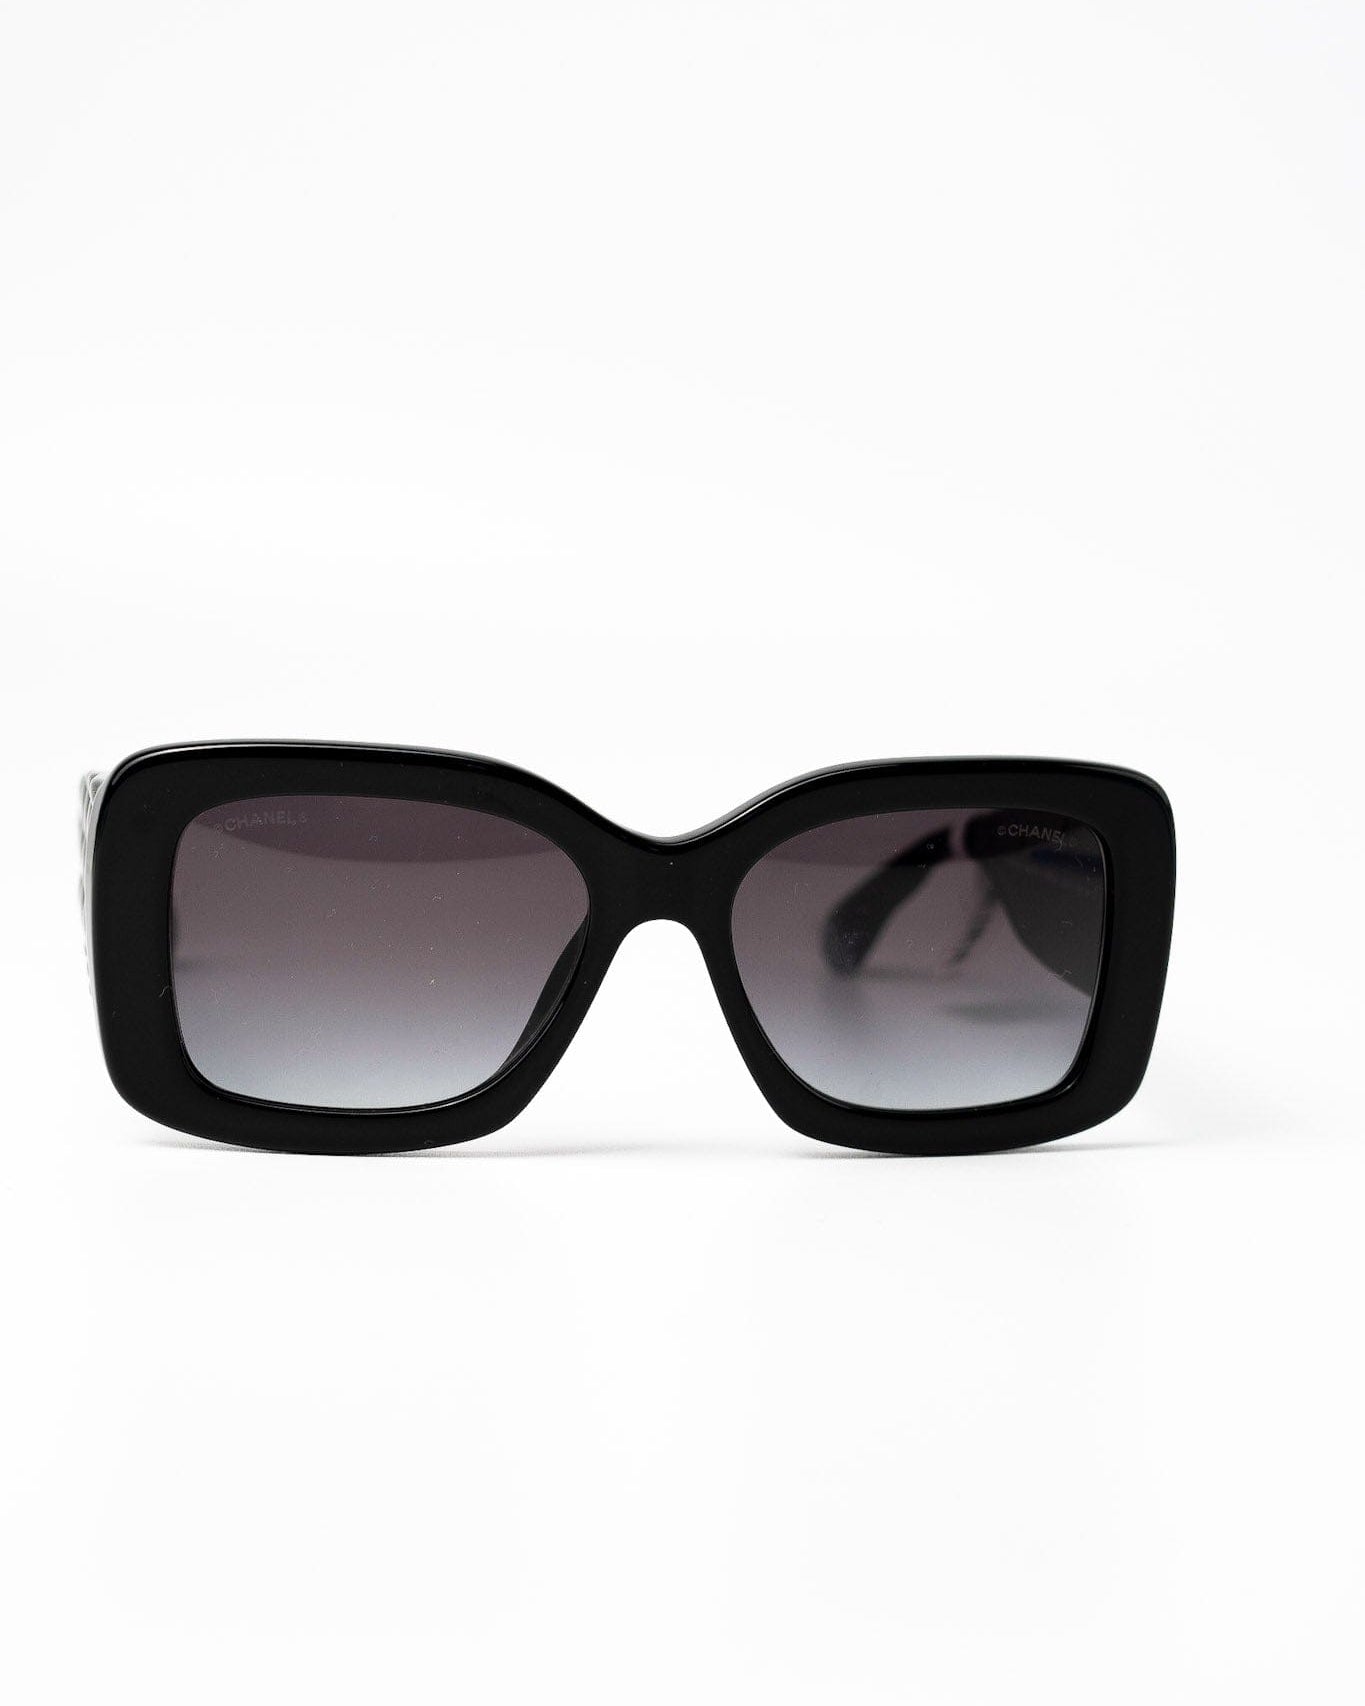 CHANEL Sunglasses Black Black CC Sunglasses 5483-A - Redeluxe